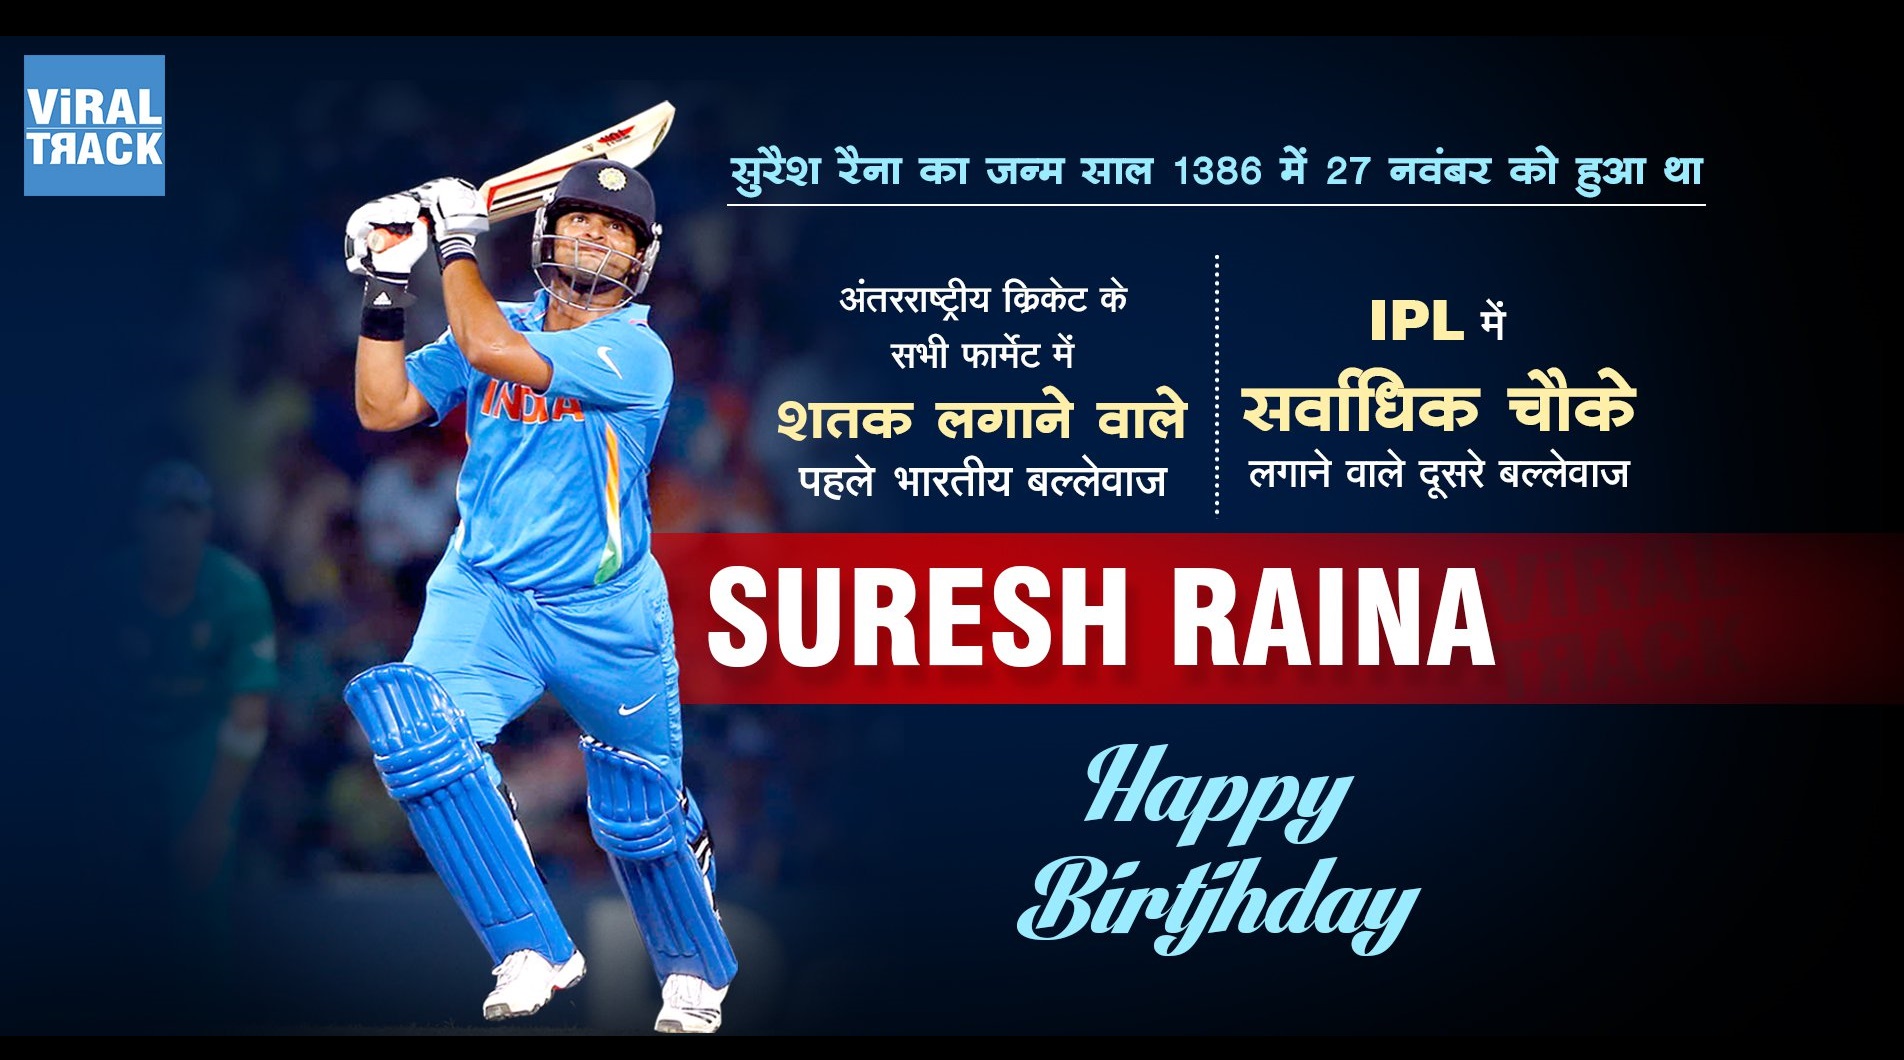 Suresh Raina's 29th birthday 